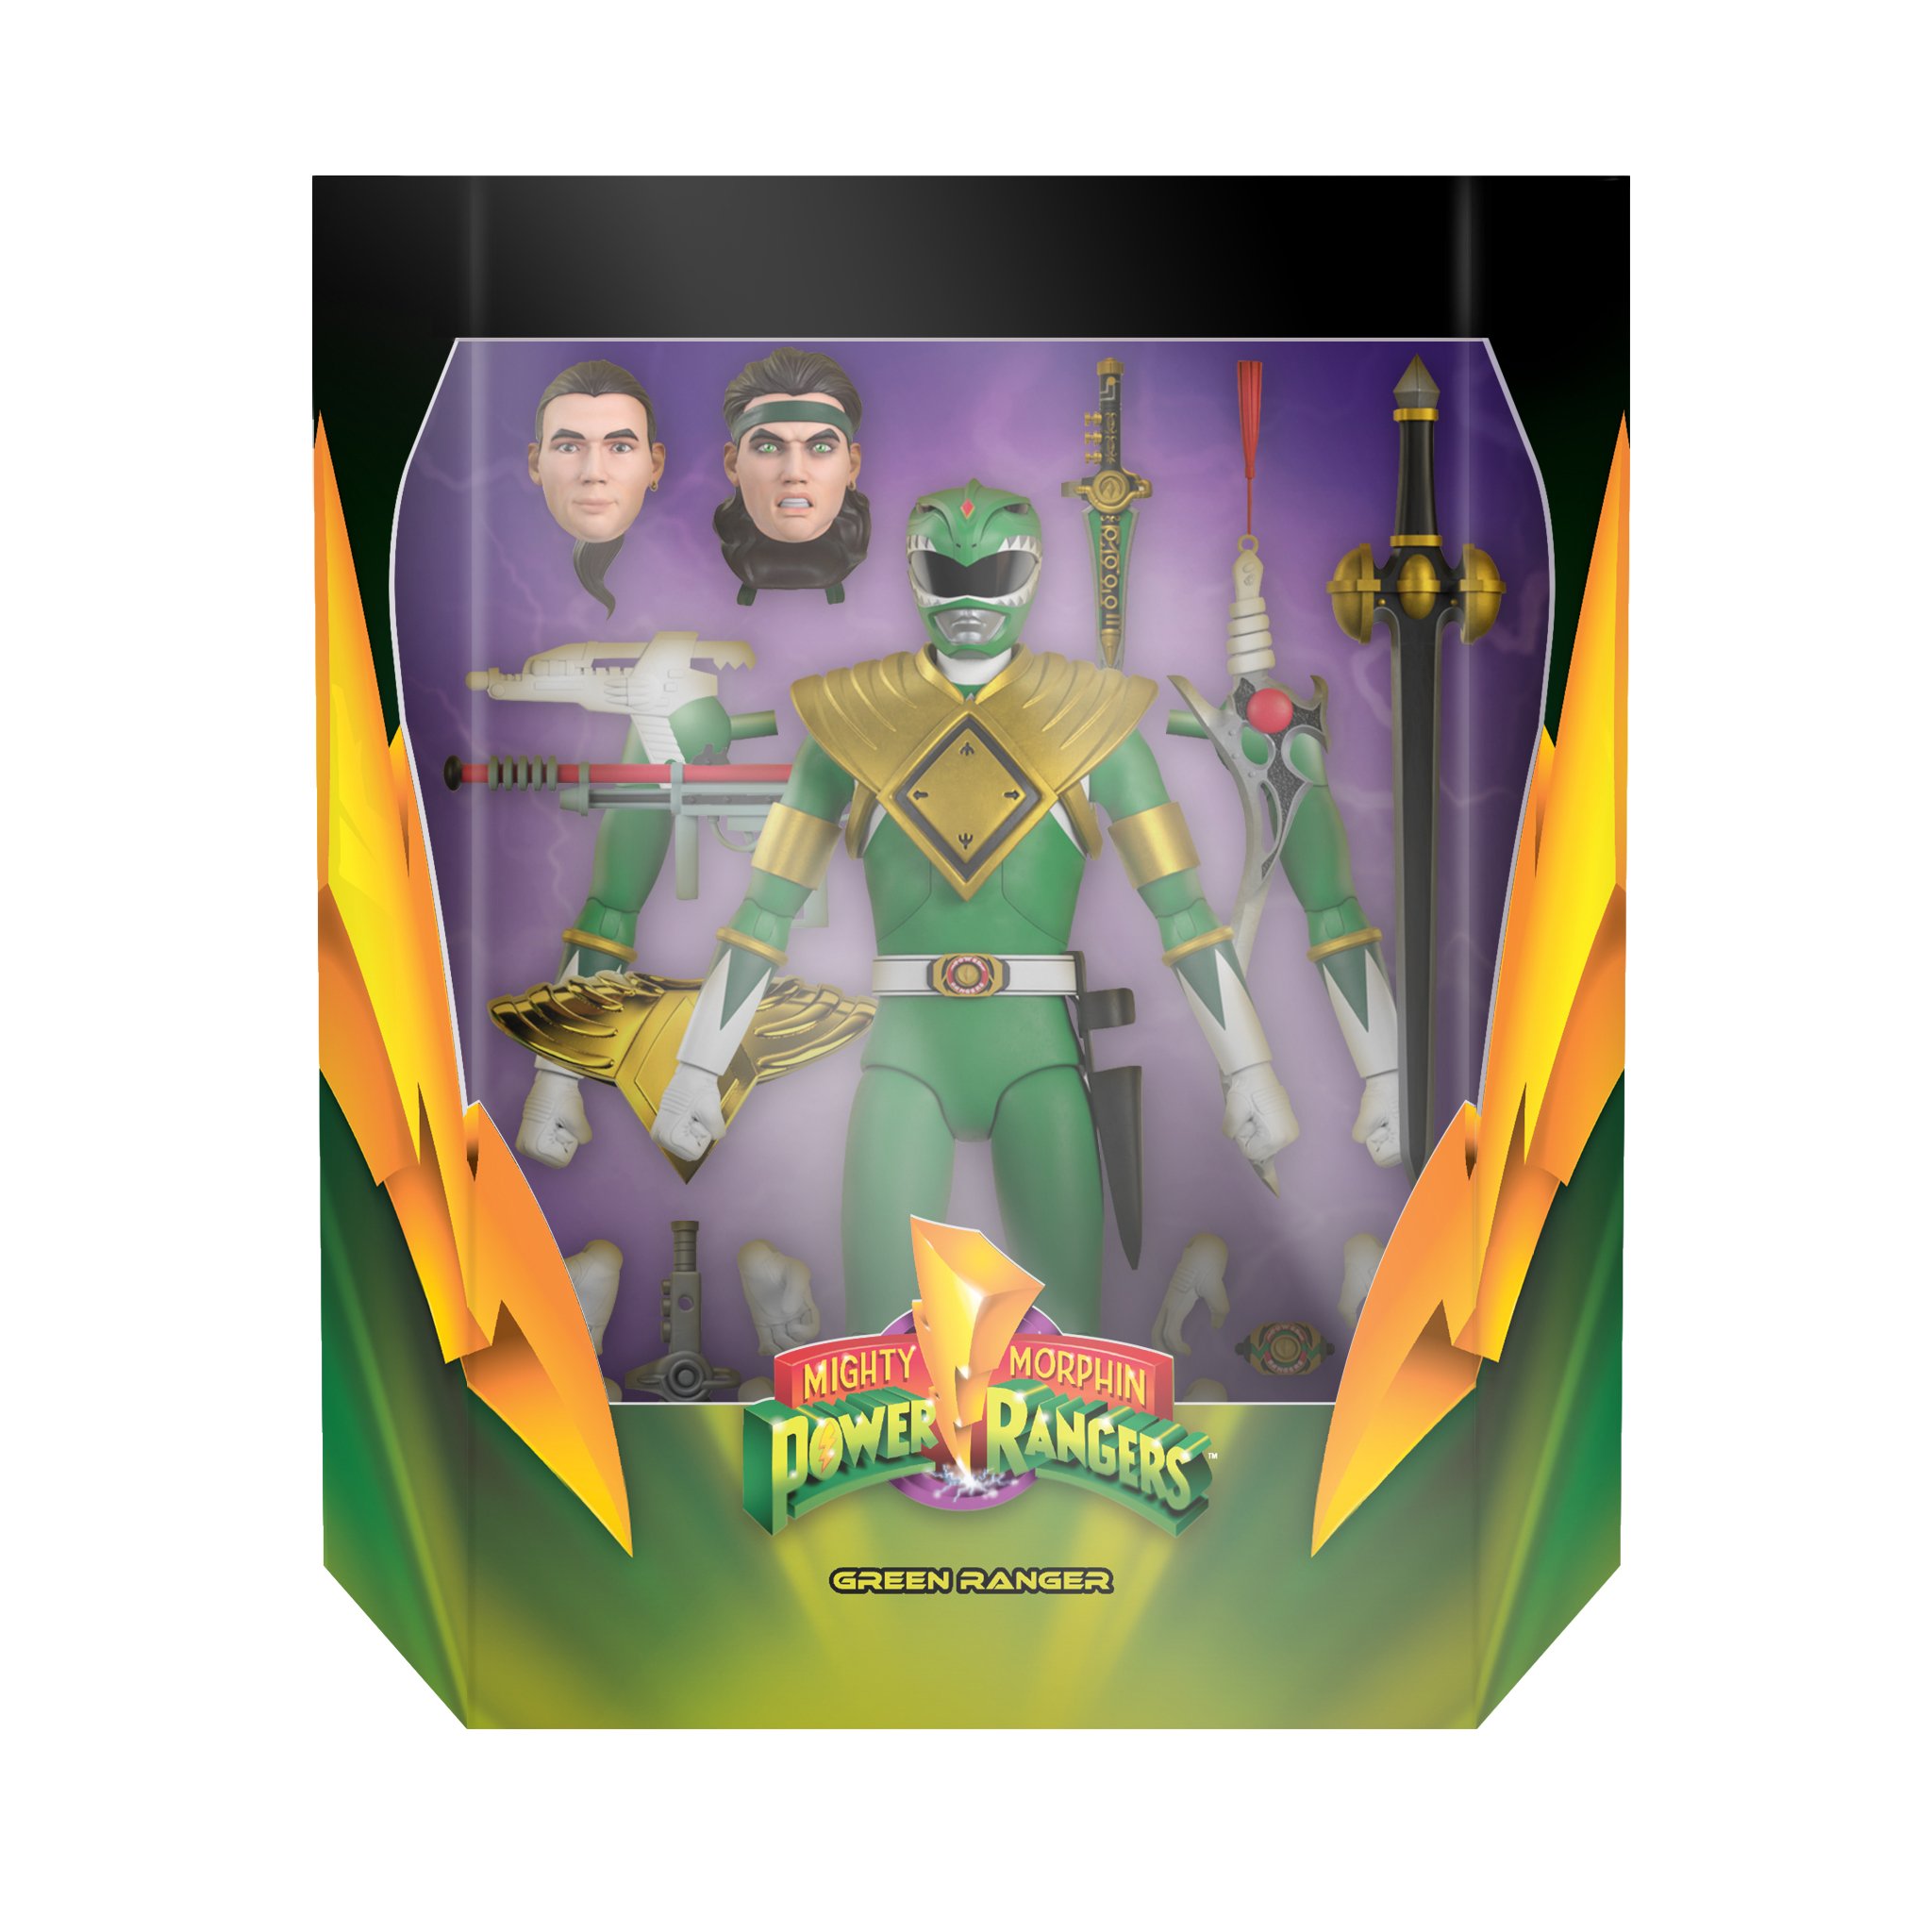 Green Ranger packaged